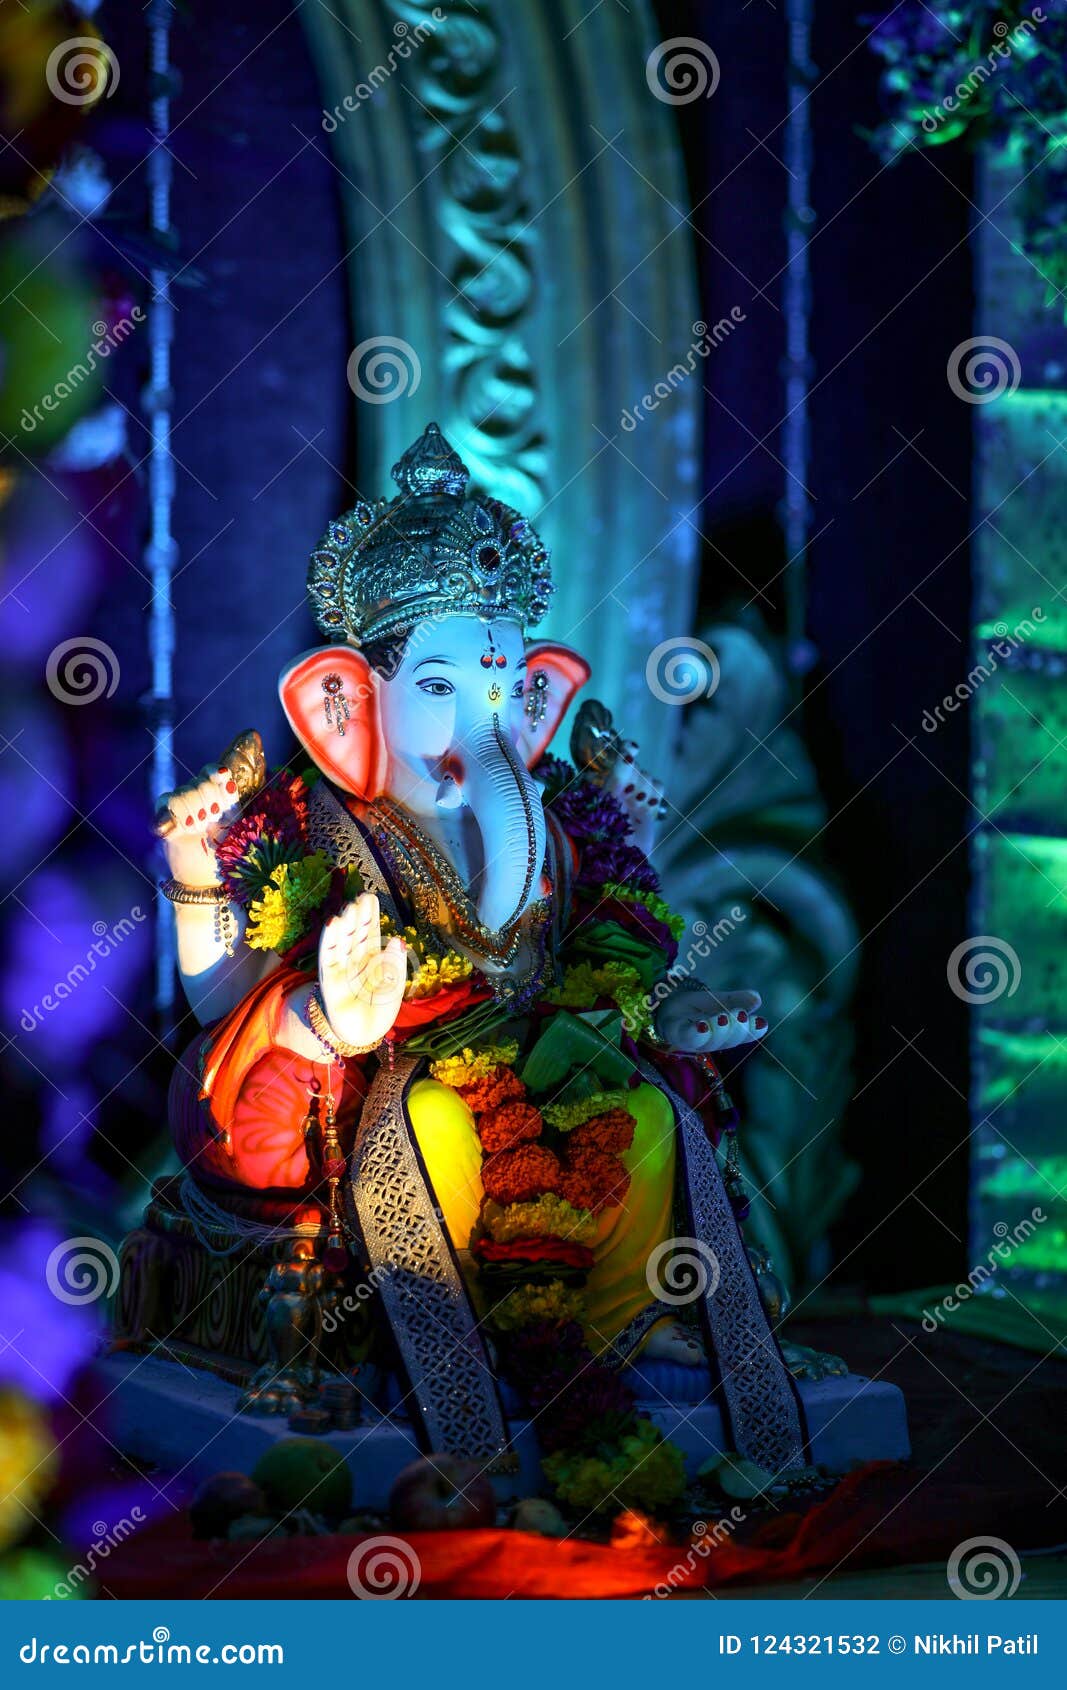 Lord Ganesha , Ganesha Festival Stock Photo - Image of icon, ganapati ...